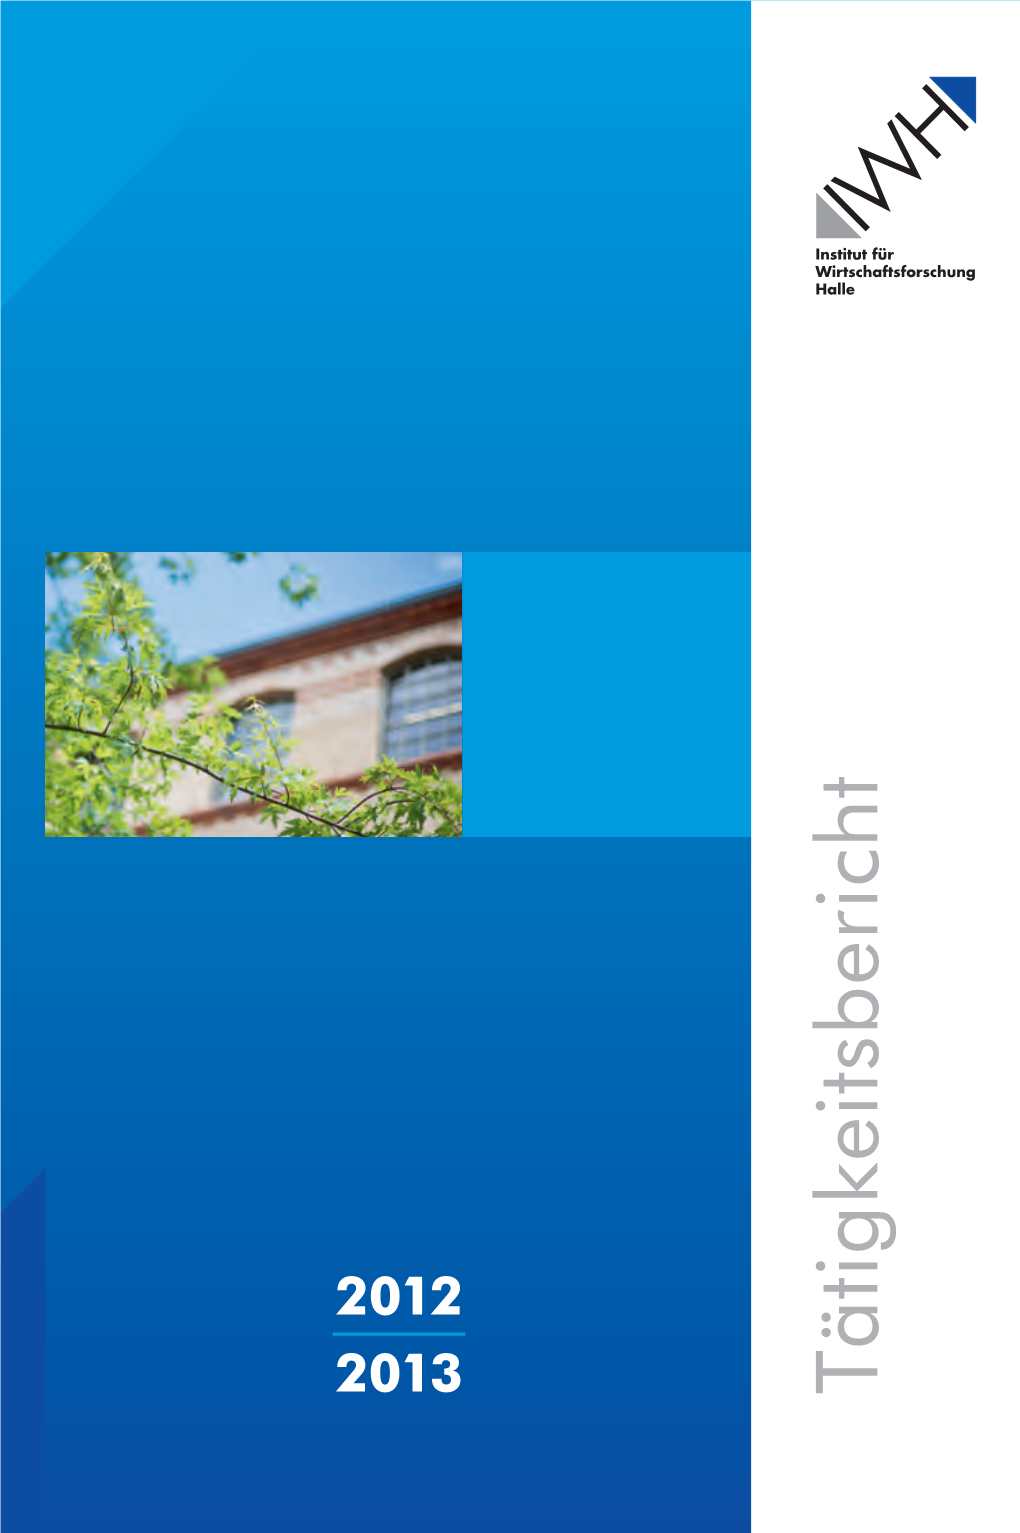 Tätigkeitsbericht Herausgeber: INSTITUT FÜR WIRTSCHAFTSFORSCHUNG HALLE – IWH Das Institut Ist Mitglied Der Leibniz-Gemeinschaft